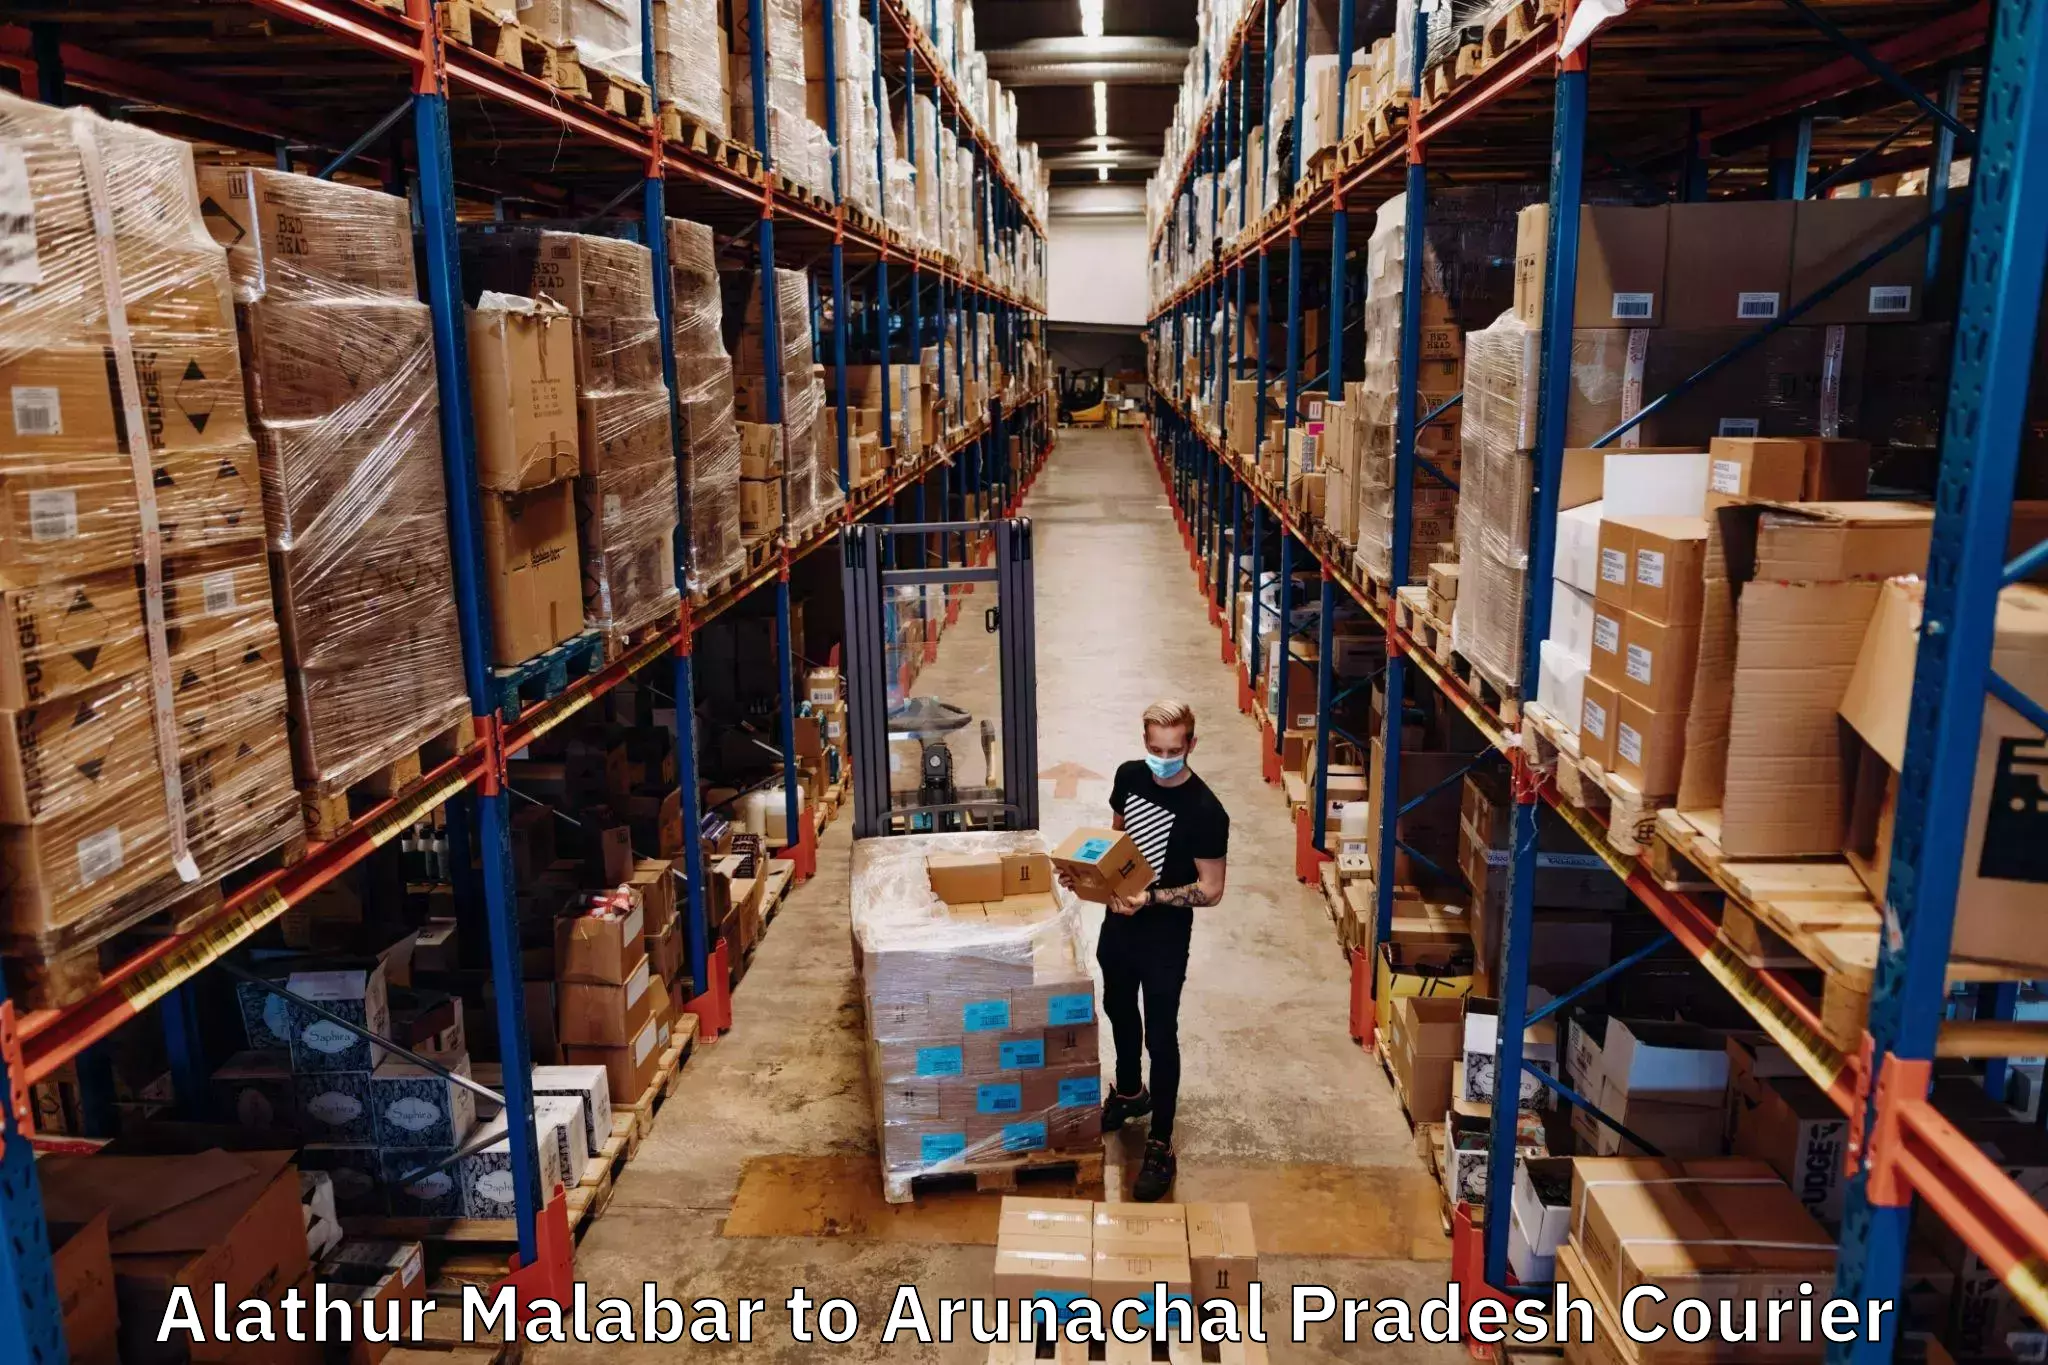 Courier service comparison Alathur Malabar to Arunachal Pradesh